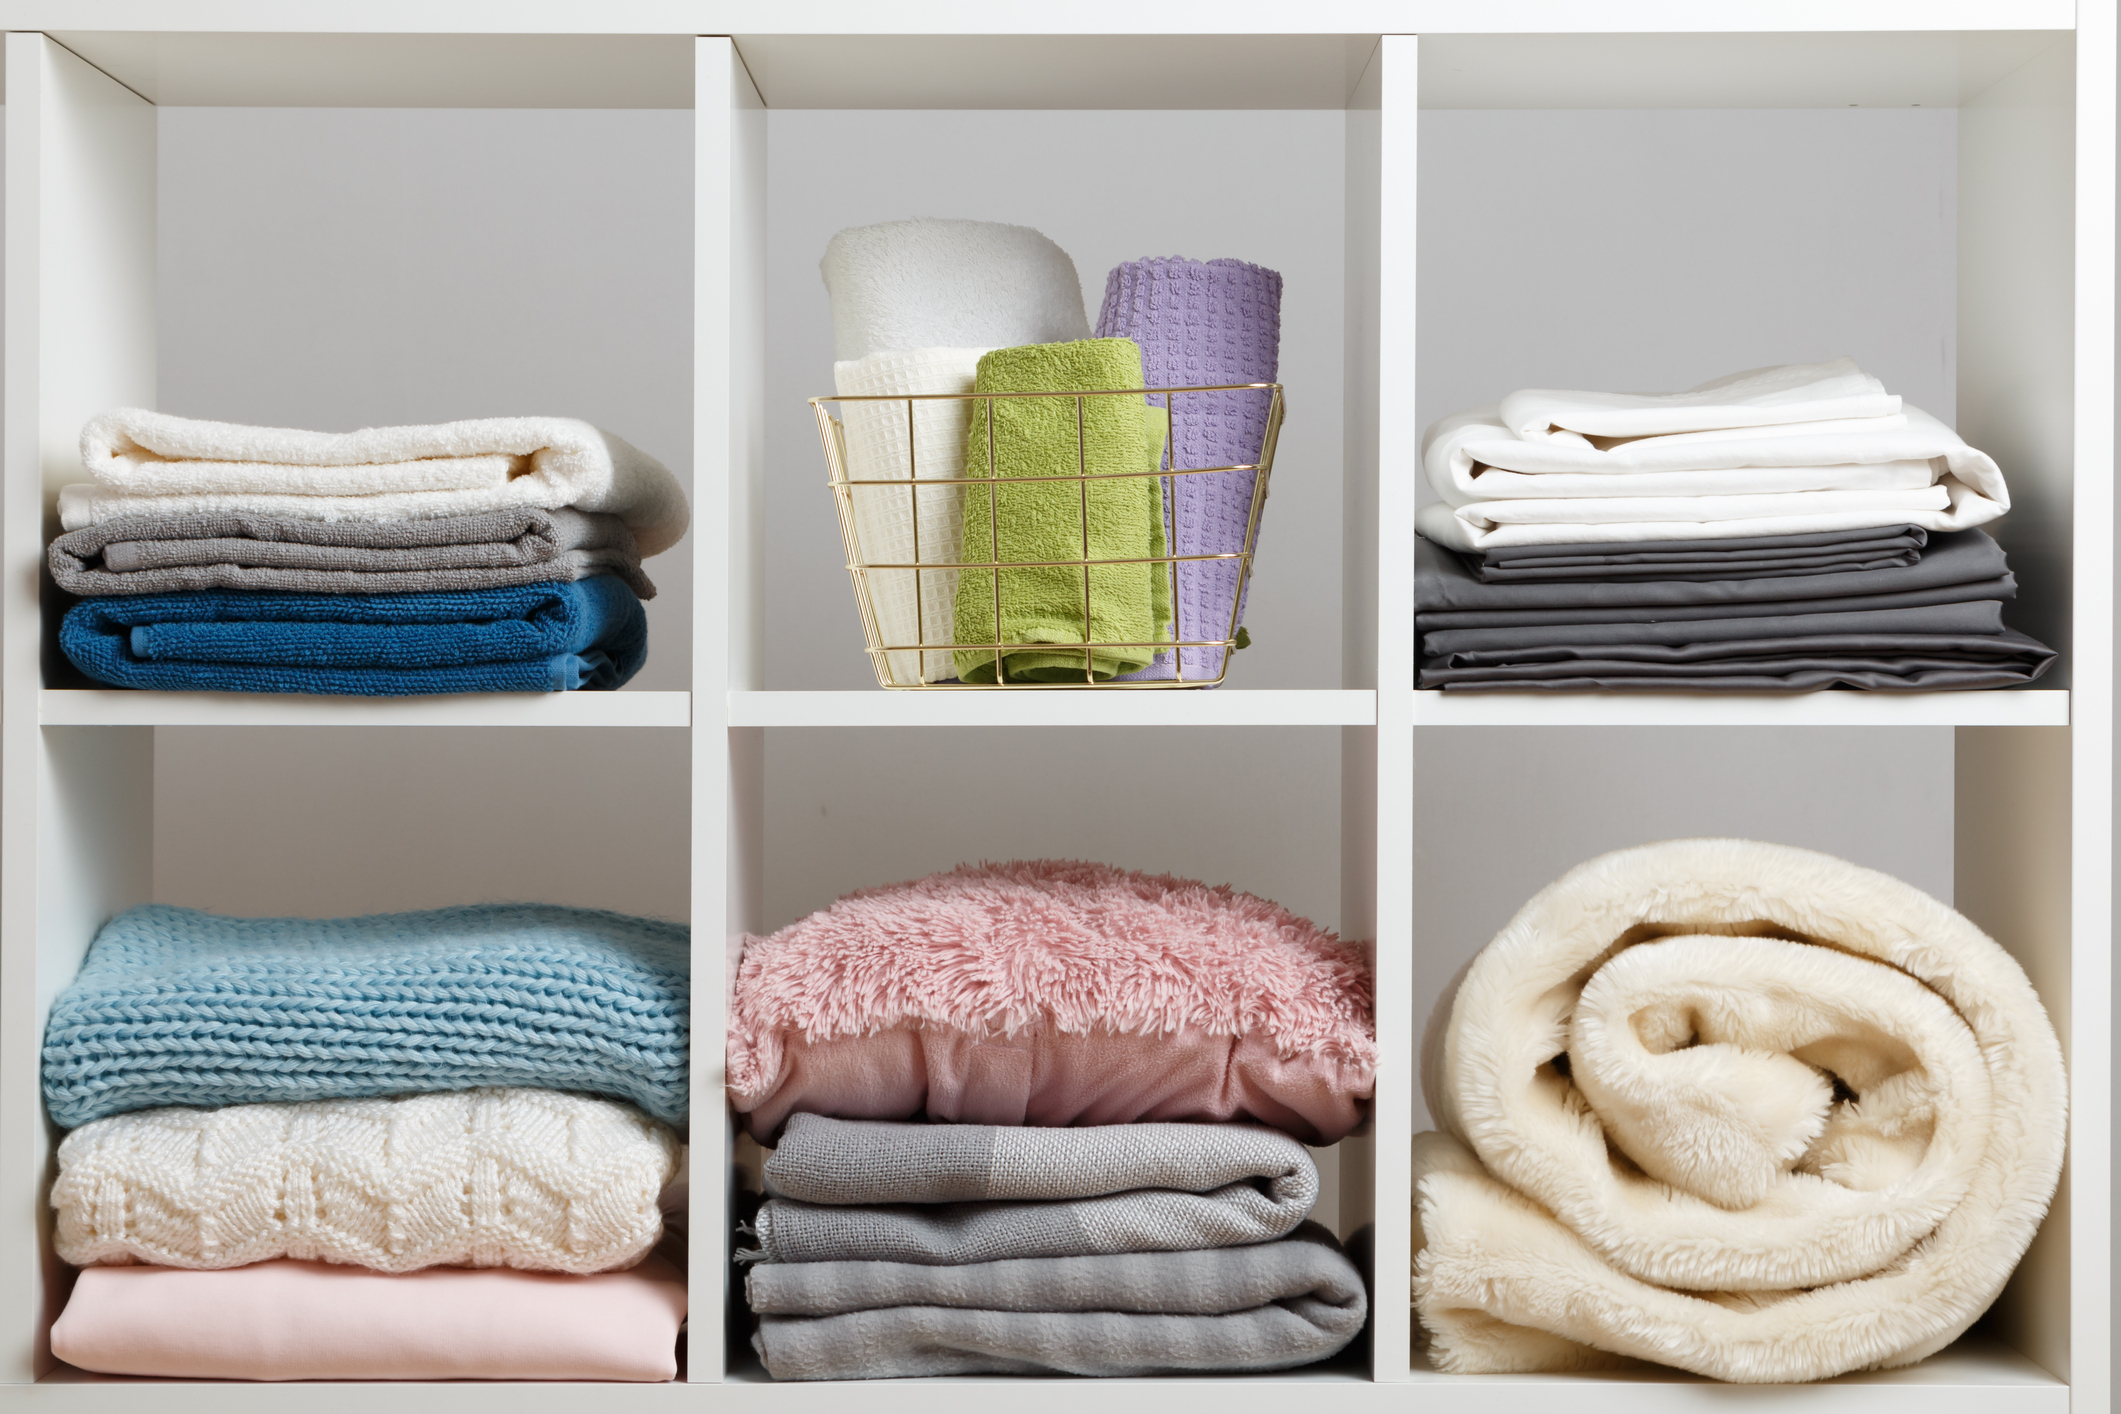 linen closet adjustable shelving